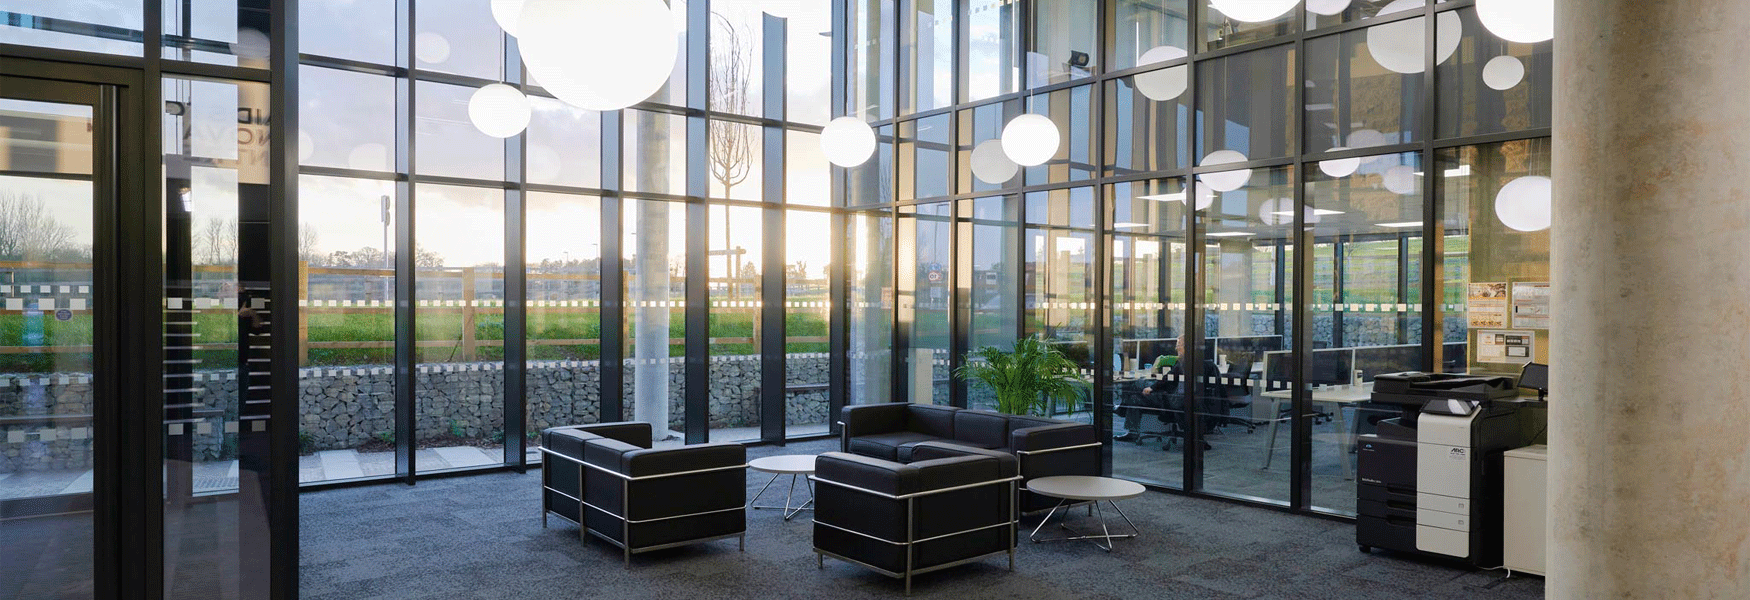 Maidstone Innovation Centre lobby